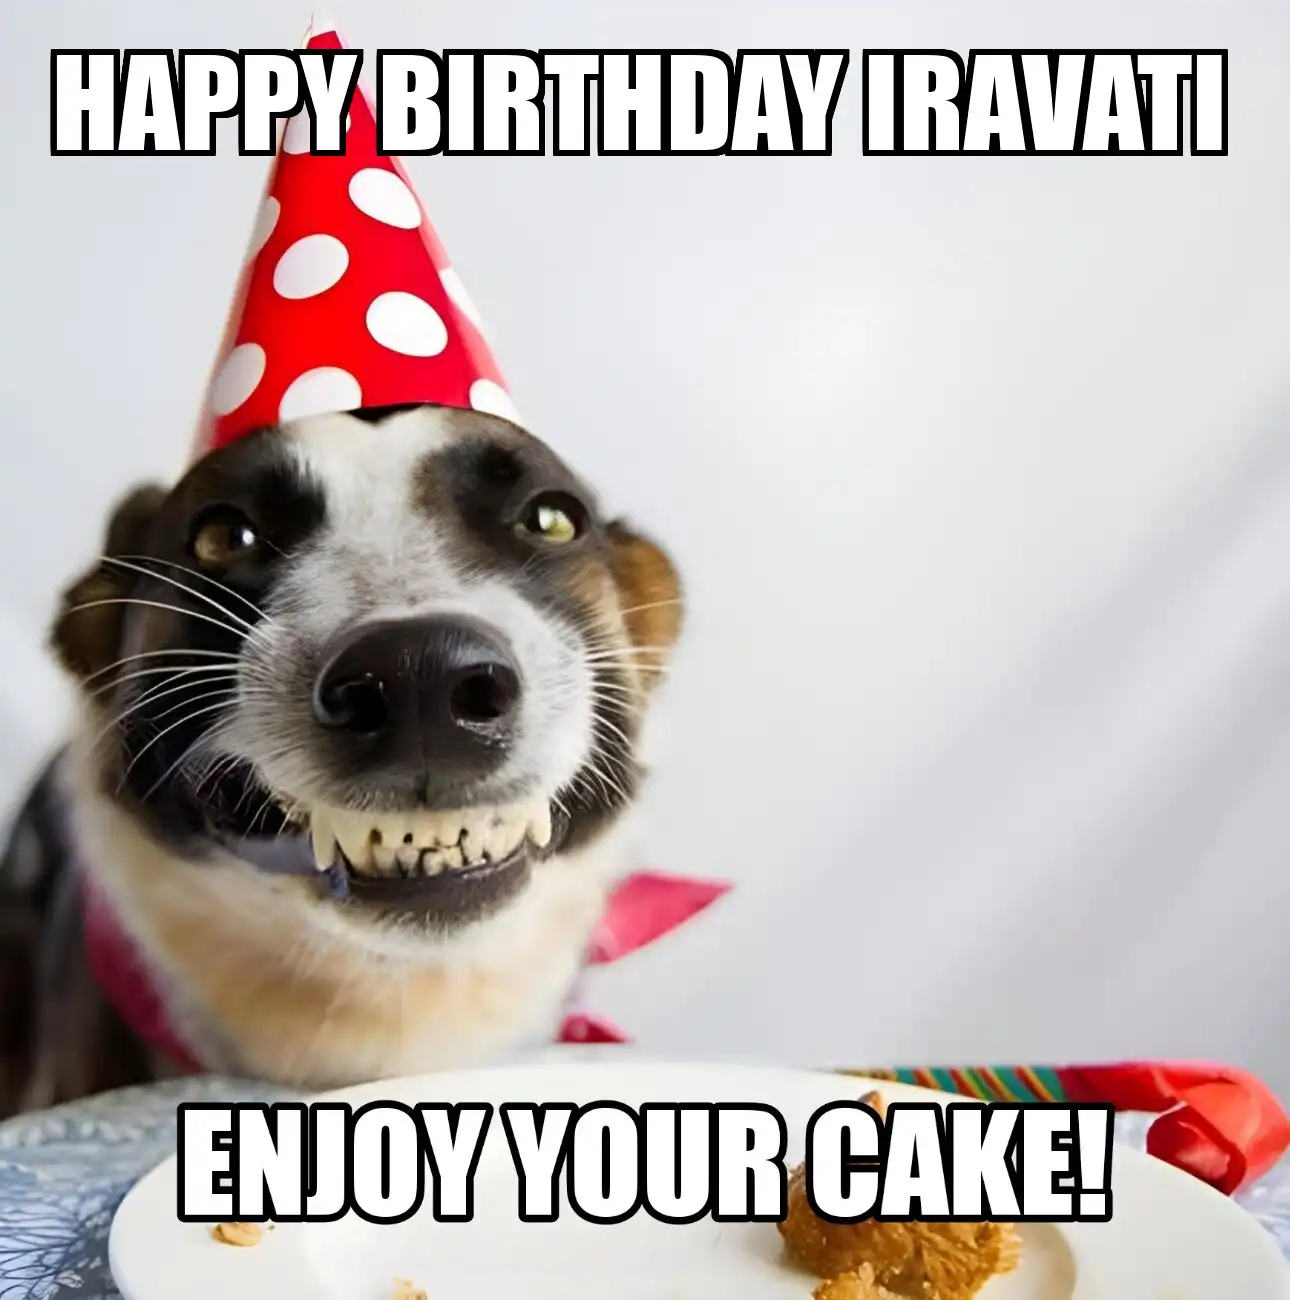 Happy Birthday Iravati Enjoy Your Cake Dog Meme